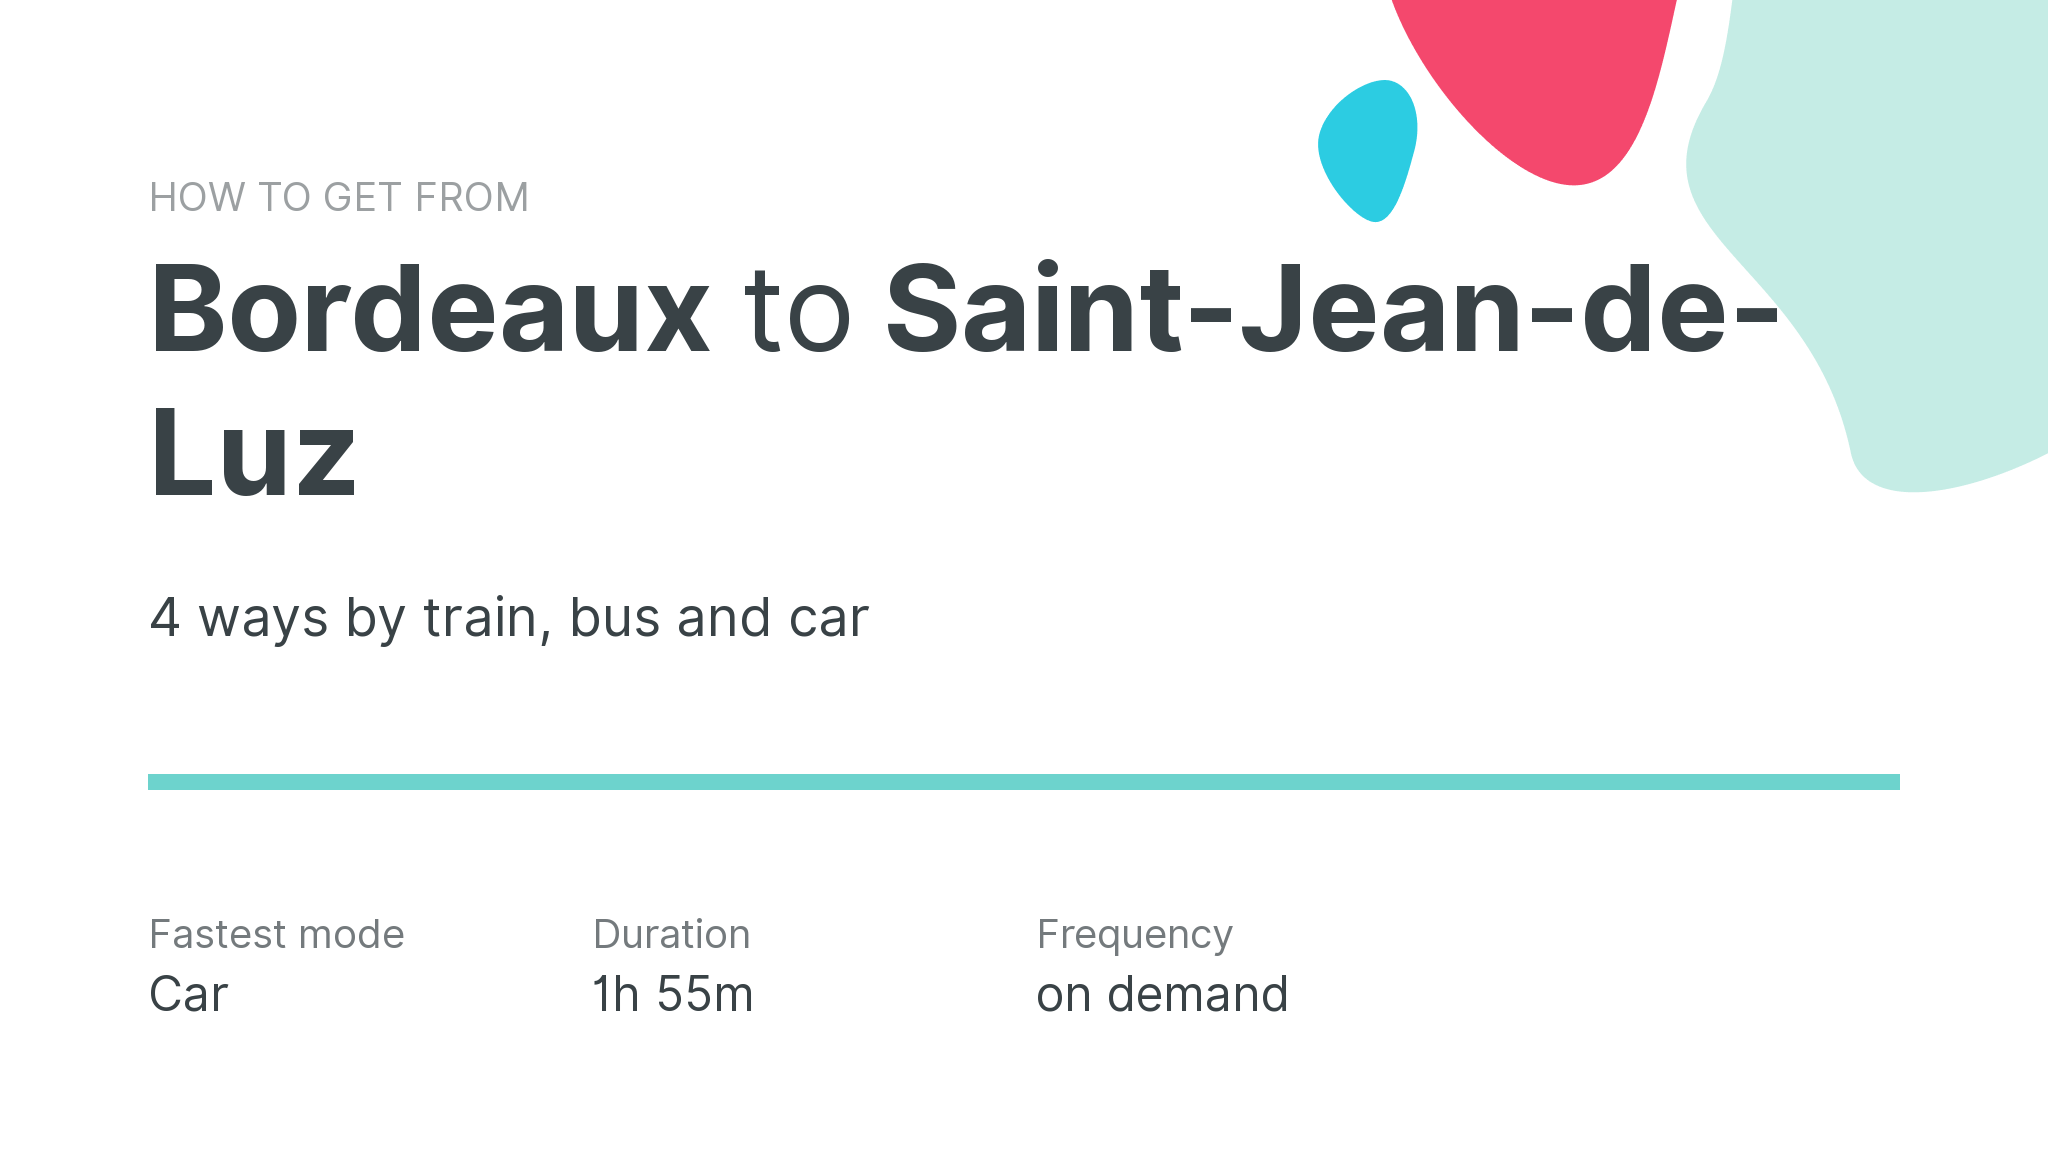 How do I get from Bordeaux to Saint-Jean-de-Luz